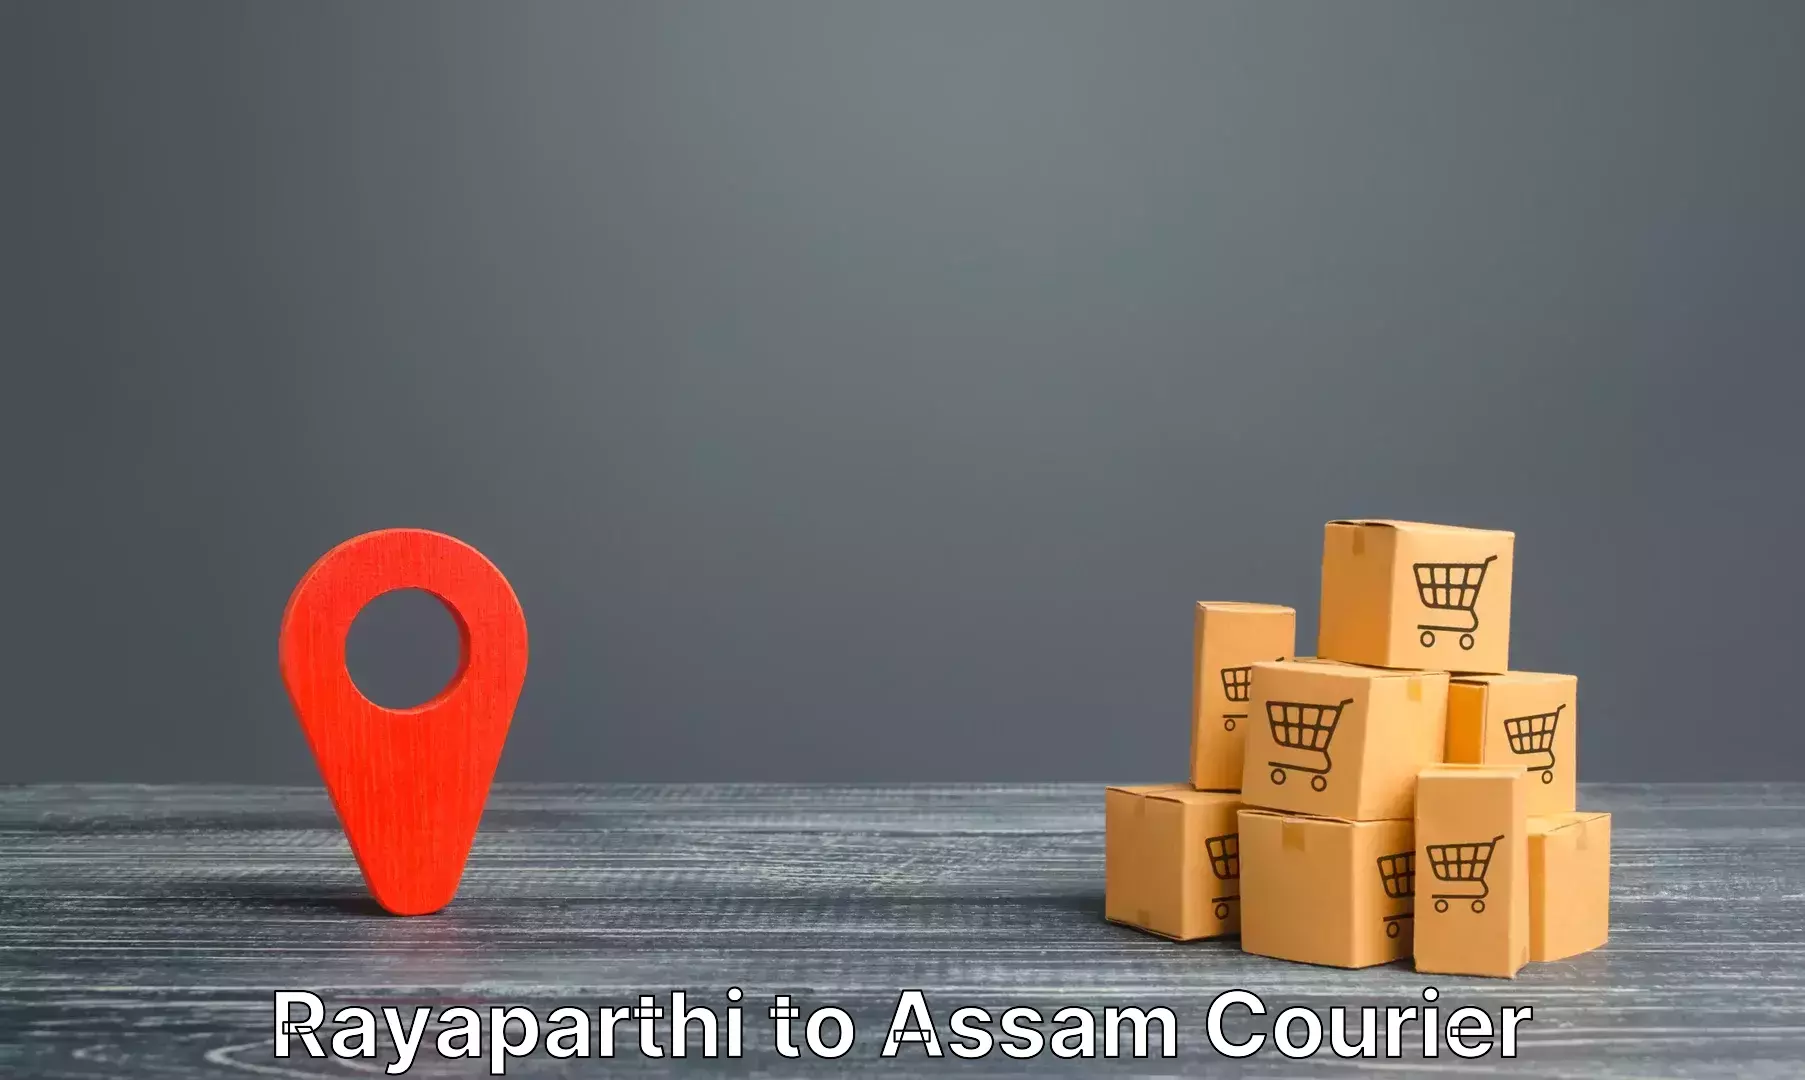 Luggage transfer service Rayaparthi to Baksha Bodoland